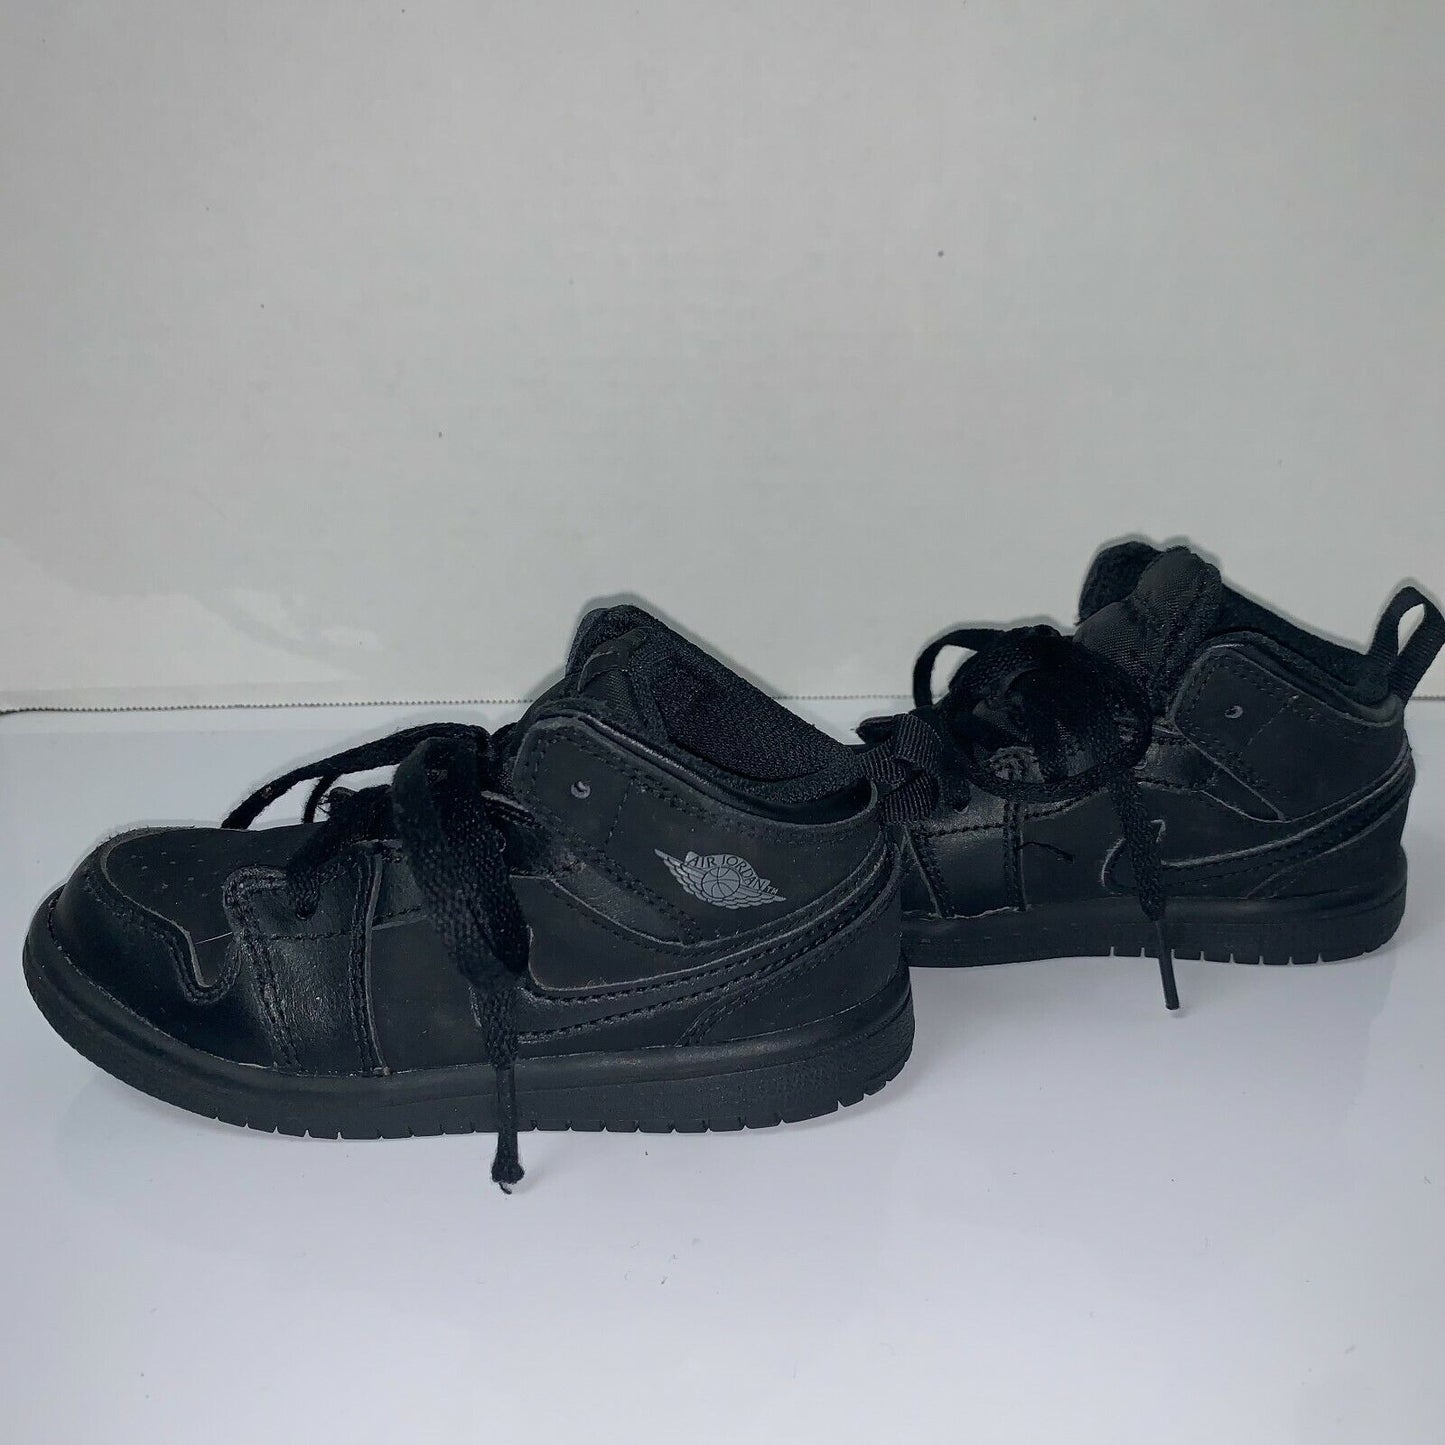 Pre-Owned Nike Dunks for Boys, Black, Sz 9c